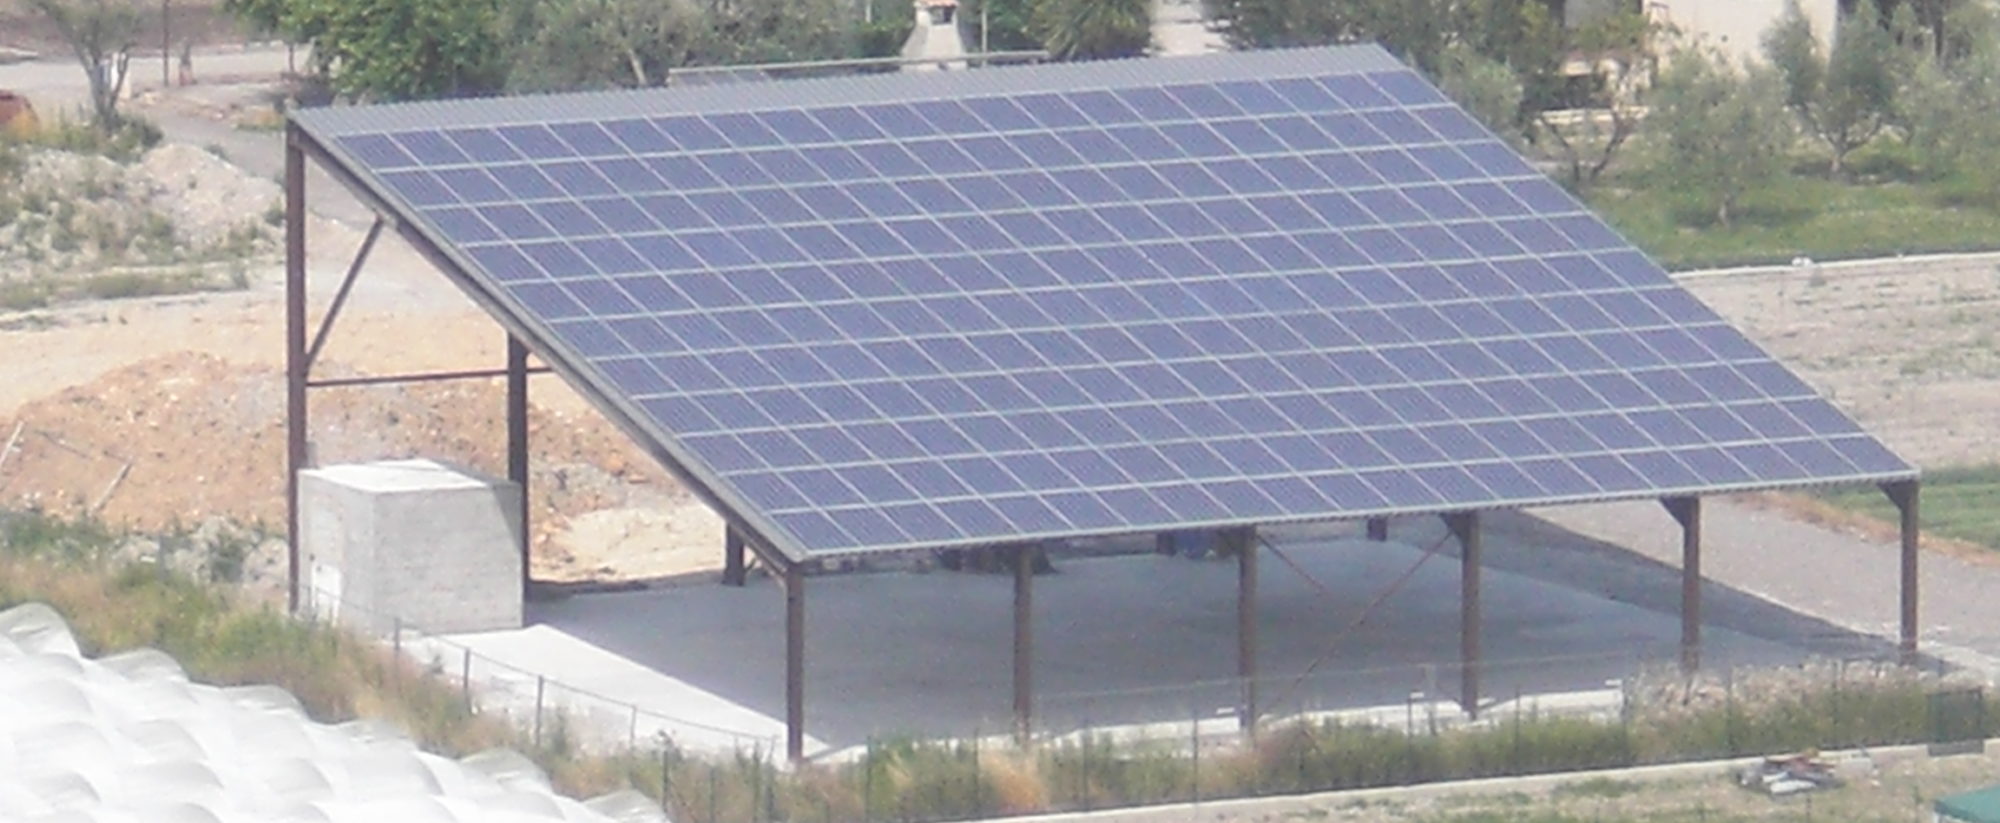 Le solaire photovoltaïque